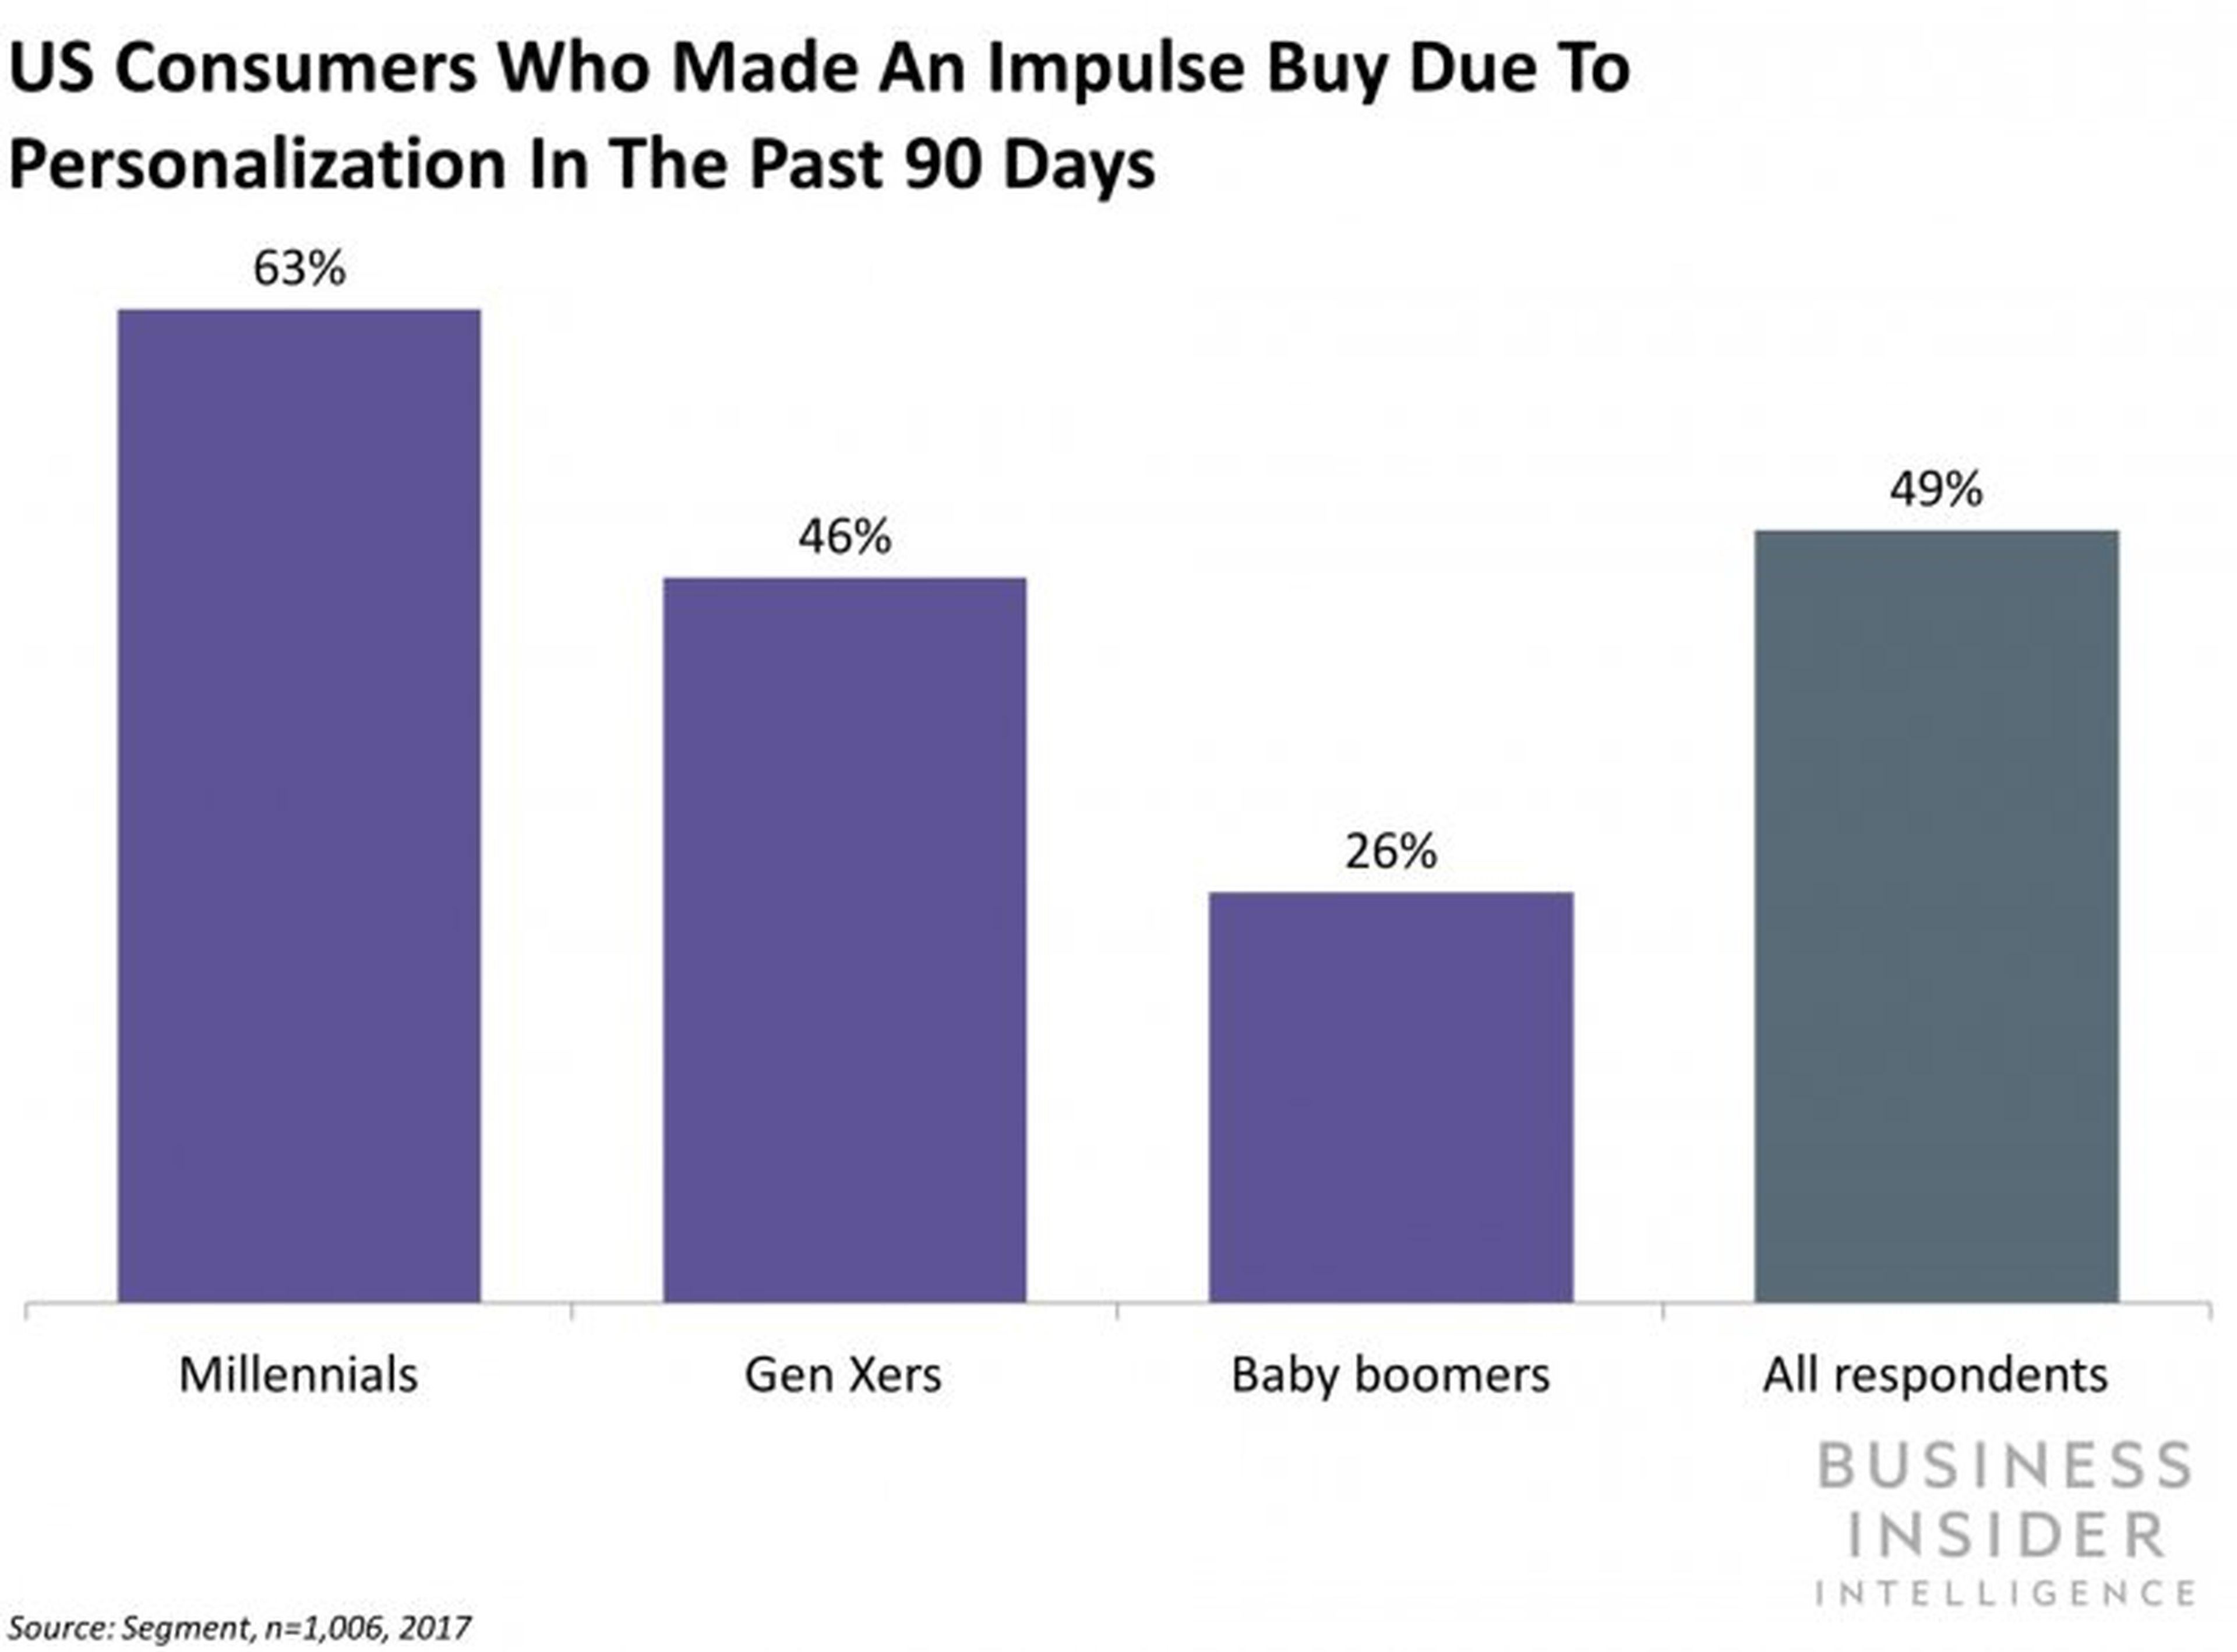 Consumidores en EE.UU. que compraron de manera impulsiva gracias a la personalización in-store en los últimos 90 días.